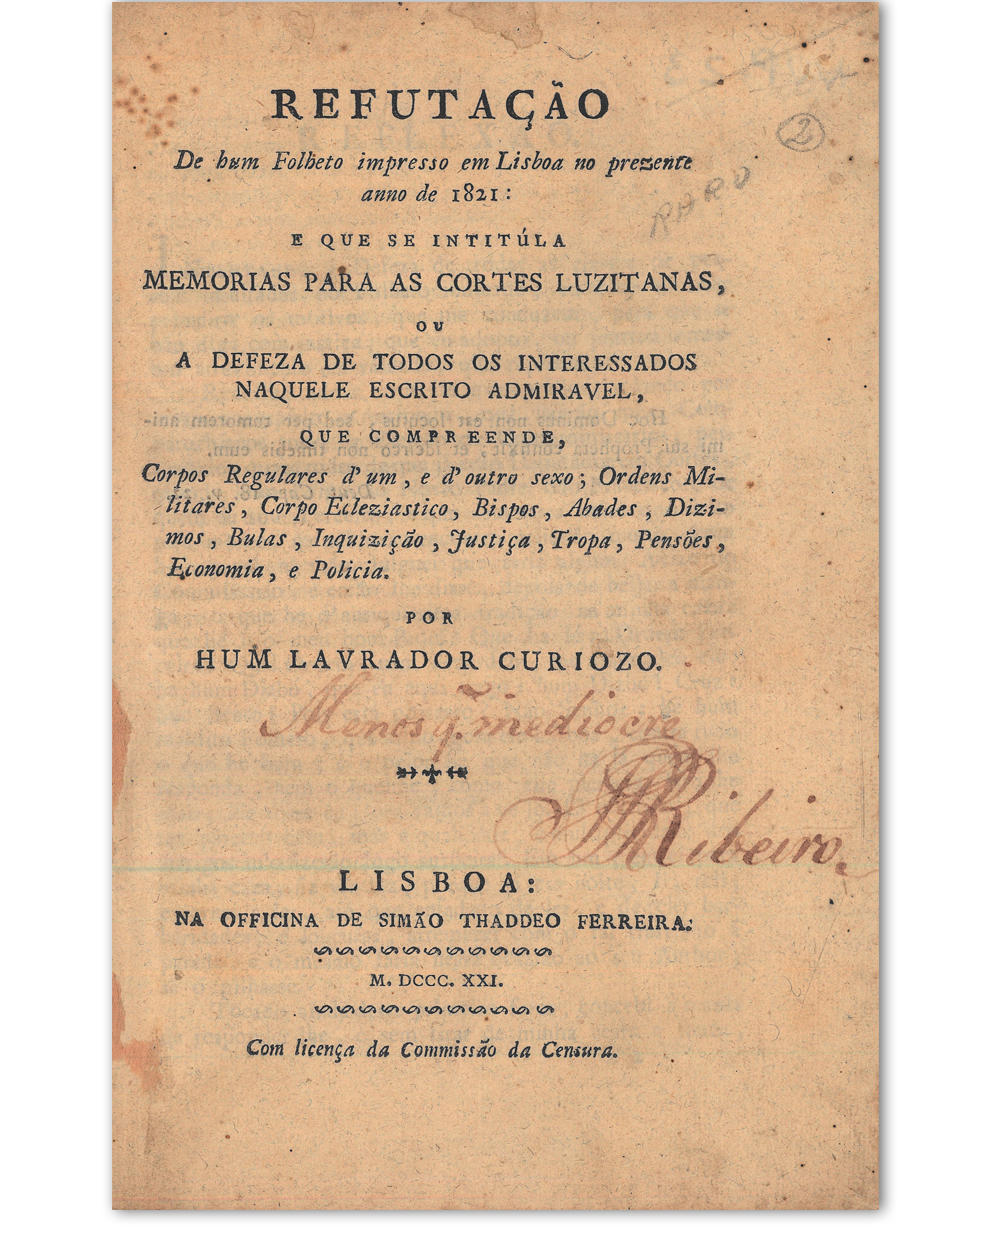 Refutação de hum folheto impresso em Lisboa no prezente anno de 1821: que se intitula memorias para as cortes luzitanas, ou a defeza de todos os interessados naquele escrito admirável. Lisboa : na Imprensa Nacional, 1821. Cota: NVP-23